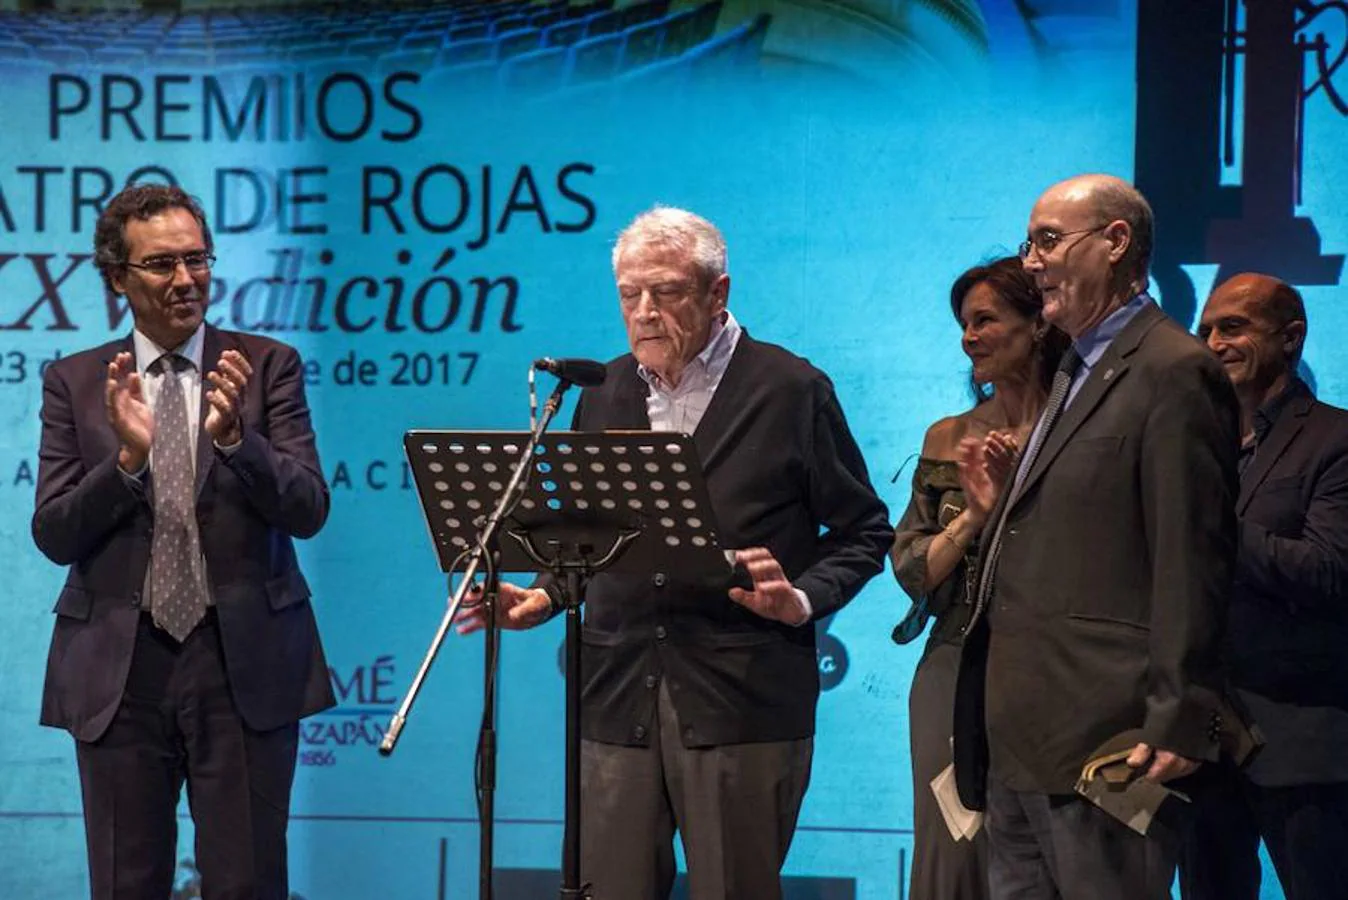 El teatro clásico, como cátedra. Rafael Pérez Sierra se dirige al público para agradecer el premio especial Teatro de Rojas 2017 por la organización de las jornadas de teatro clásico de Almagro